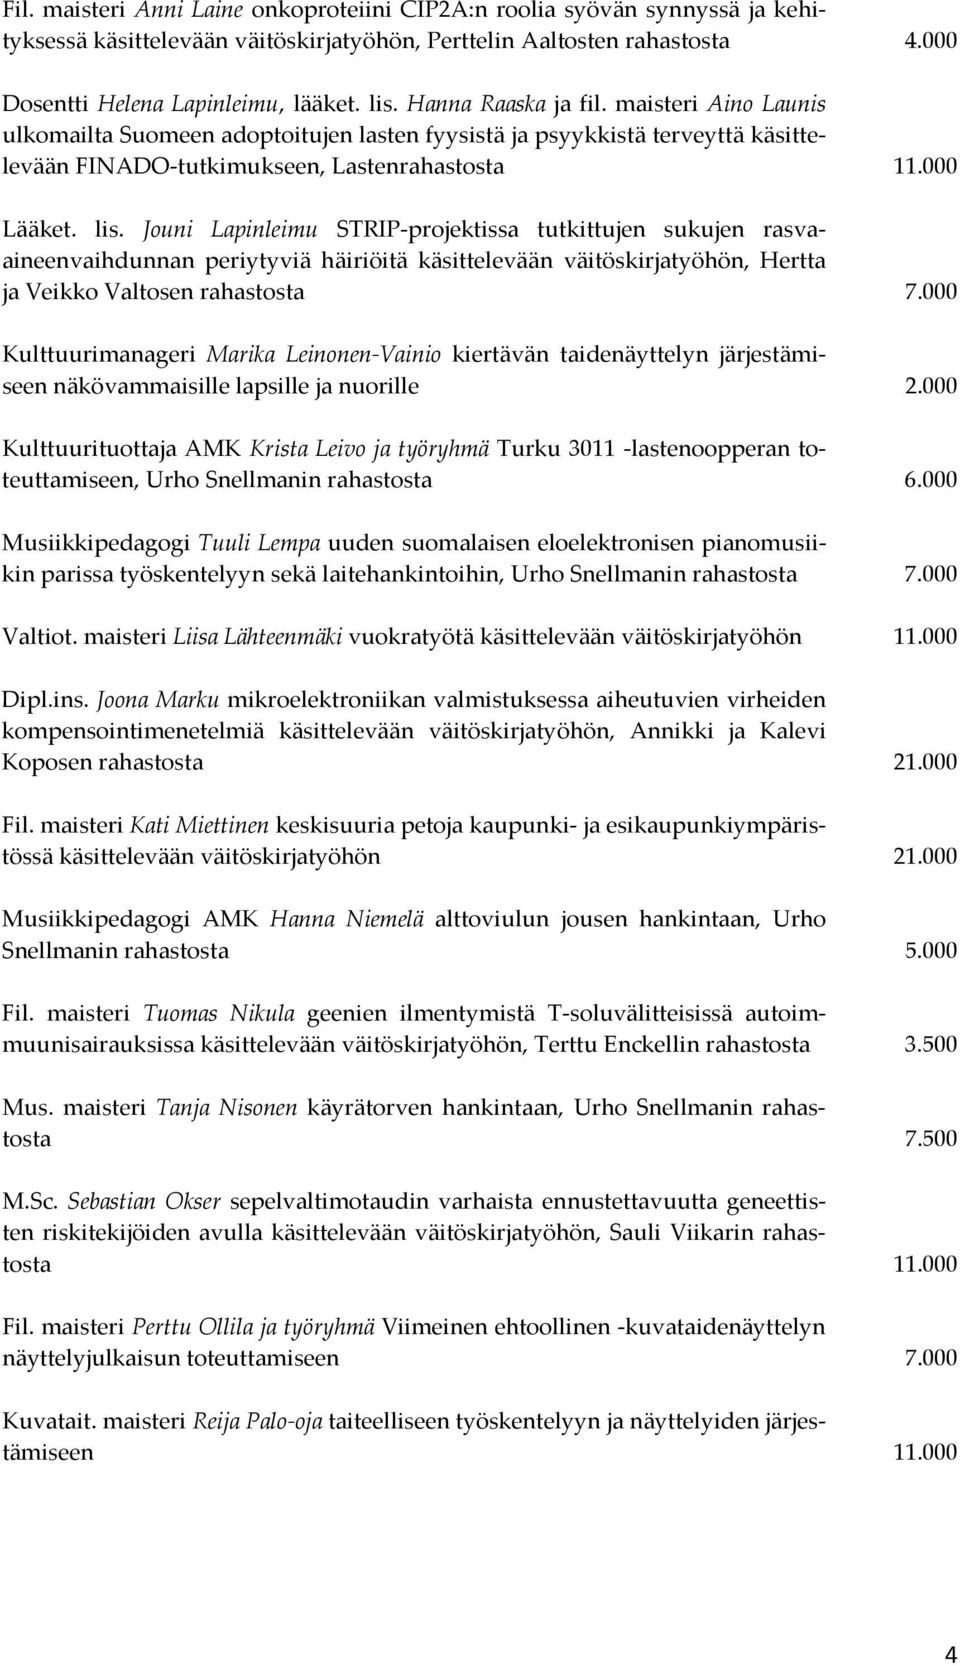 Jouni Lapinleimu STRIP-projektissa tutkittujen sukujen rasvaaineenvaihdunnan periytyviä häiriöitä käsittelevään väitöskirjatyöhön, Hertta ja Veikko Valtosen rahastosta 7.